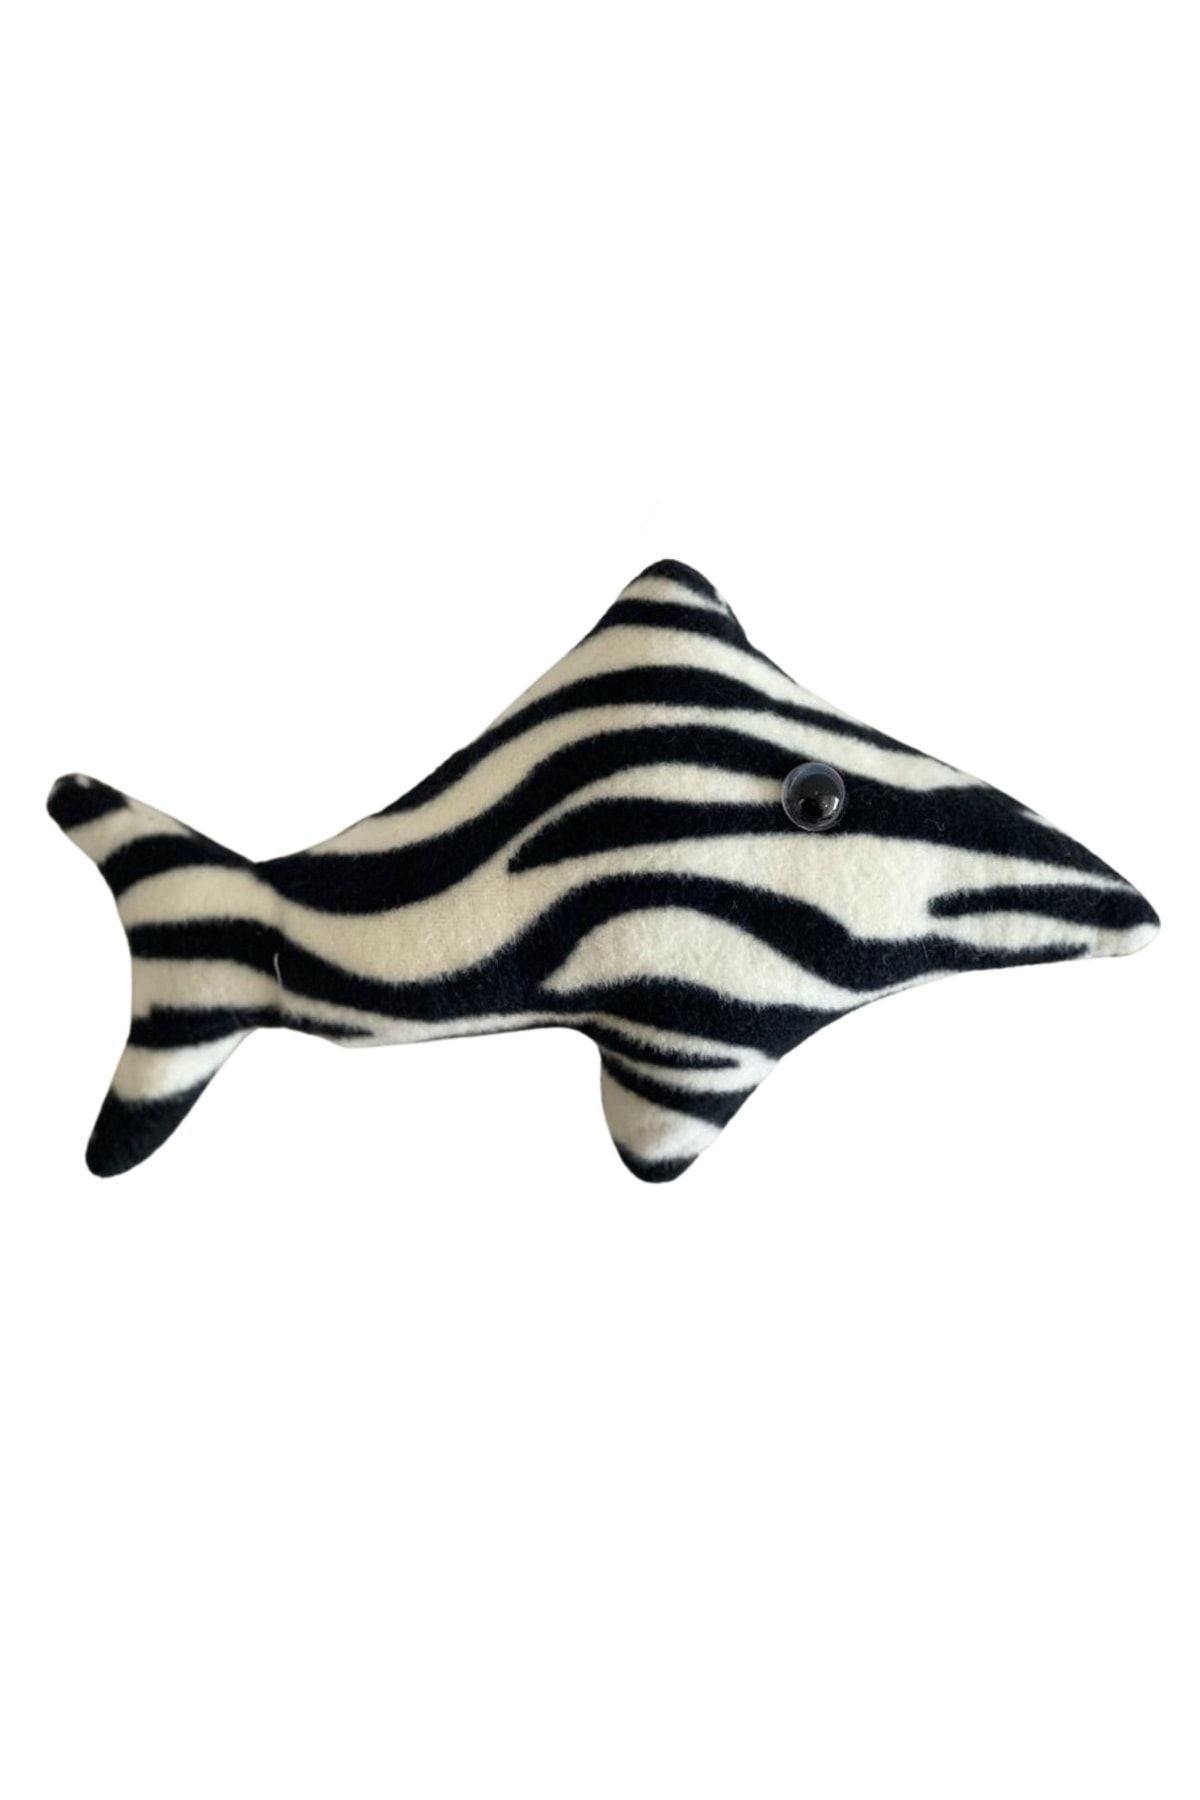 Glipet Zebra Desenli Balık Şeklinde Zilli Kedi Oyuncağı